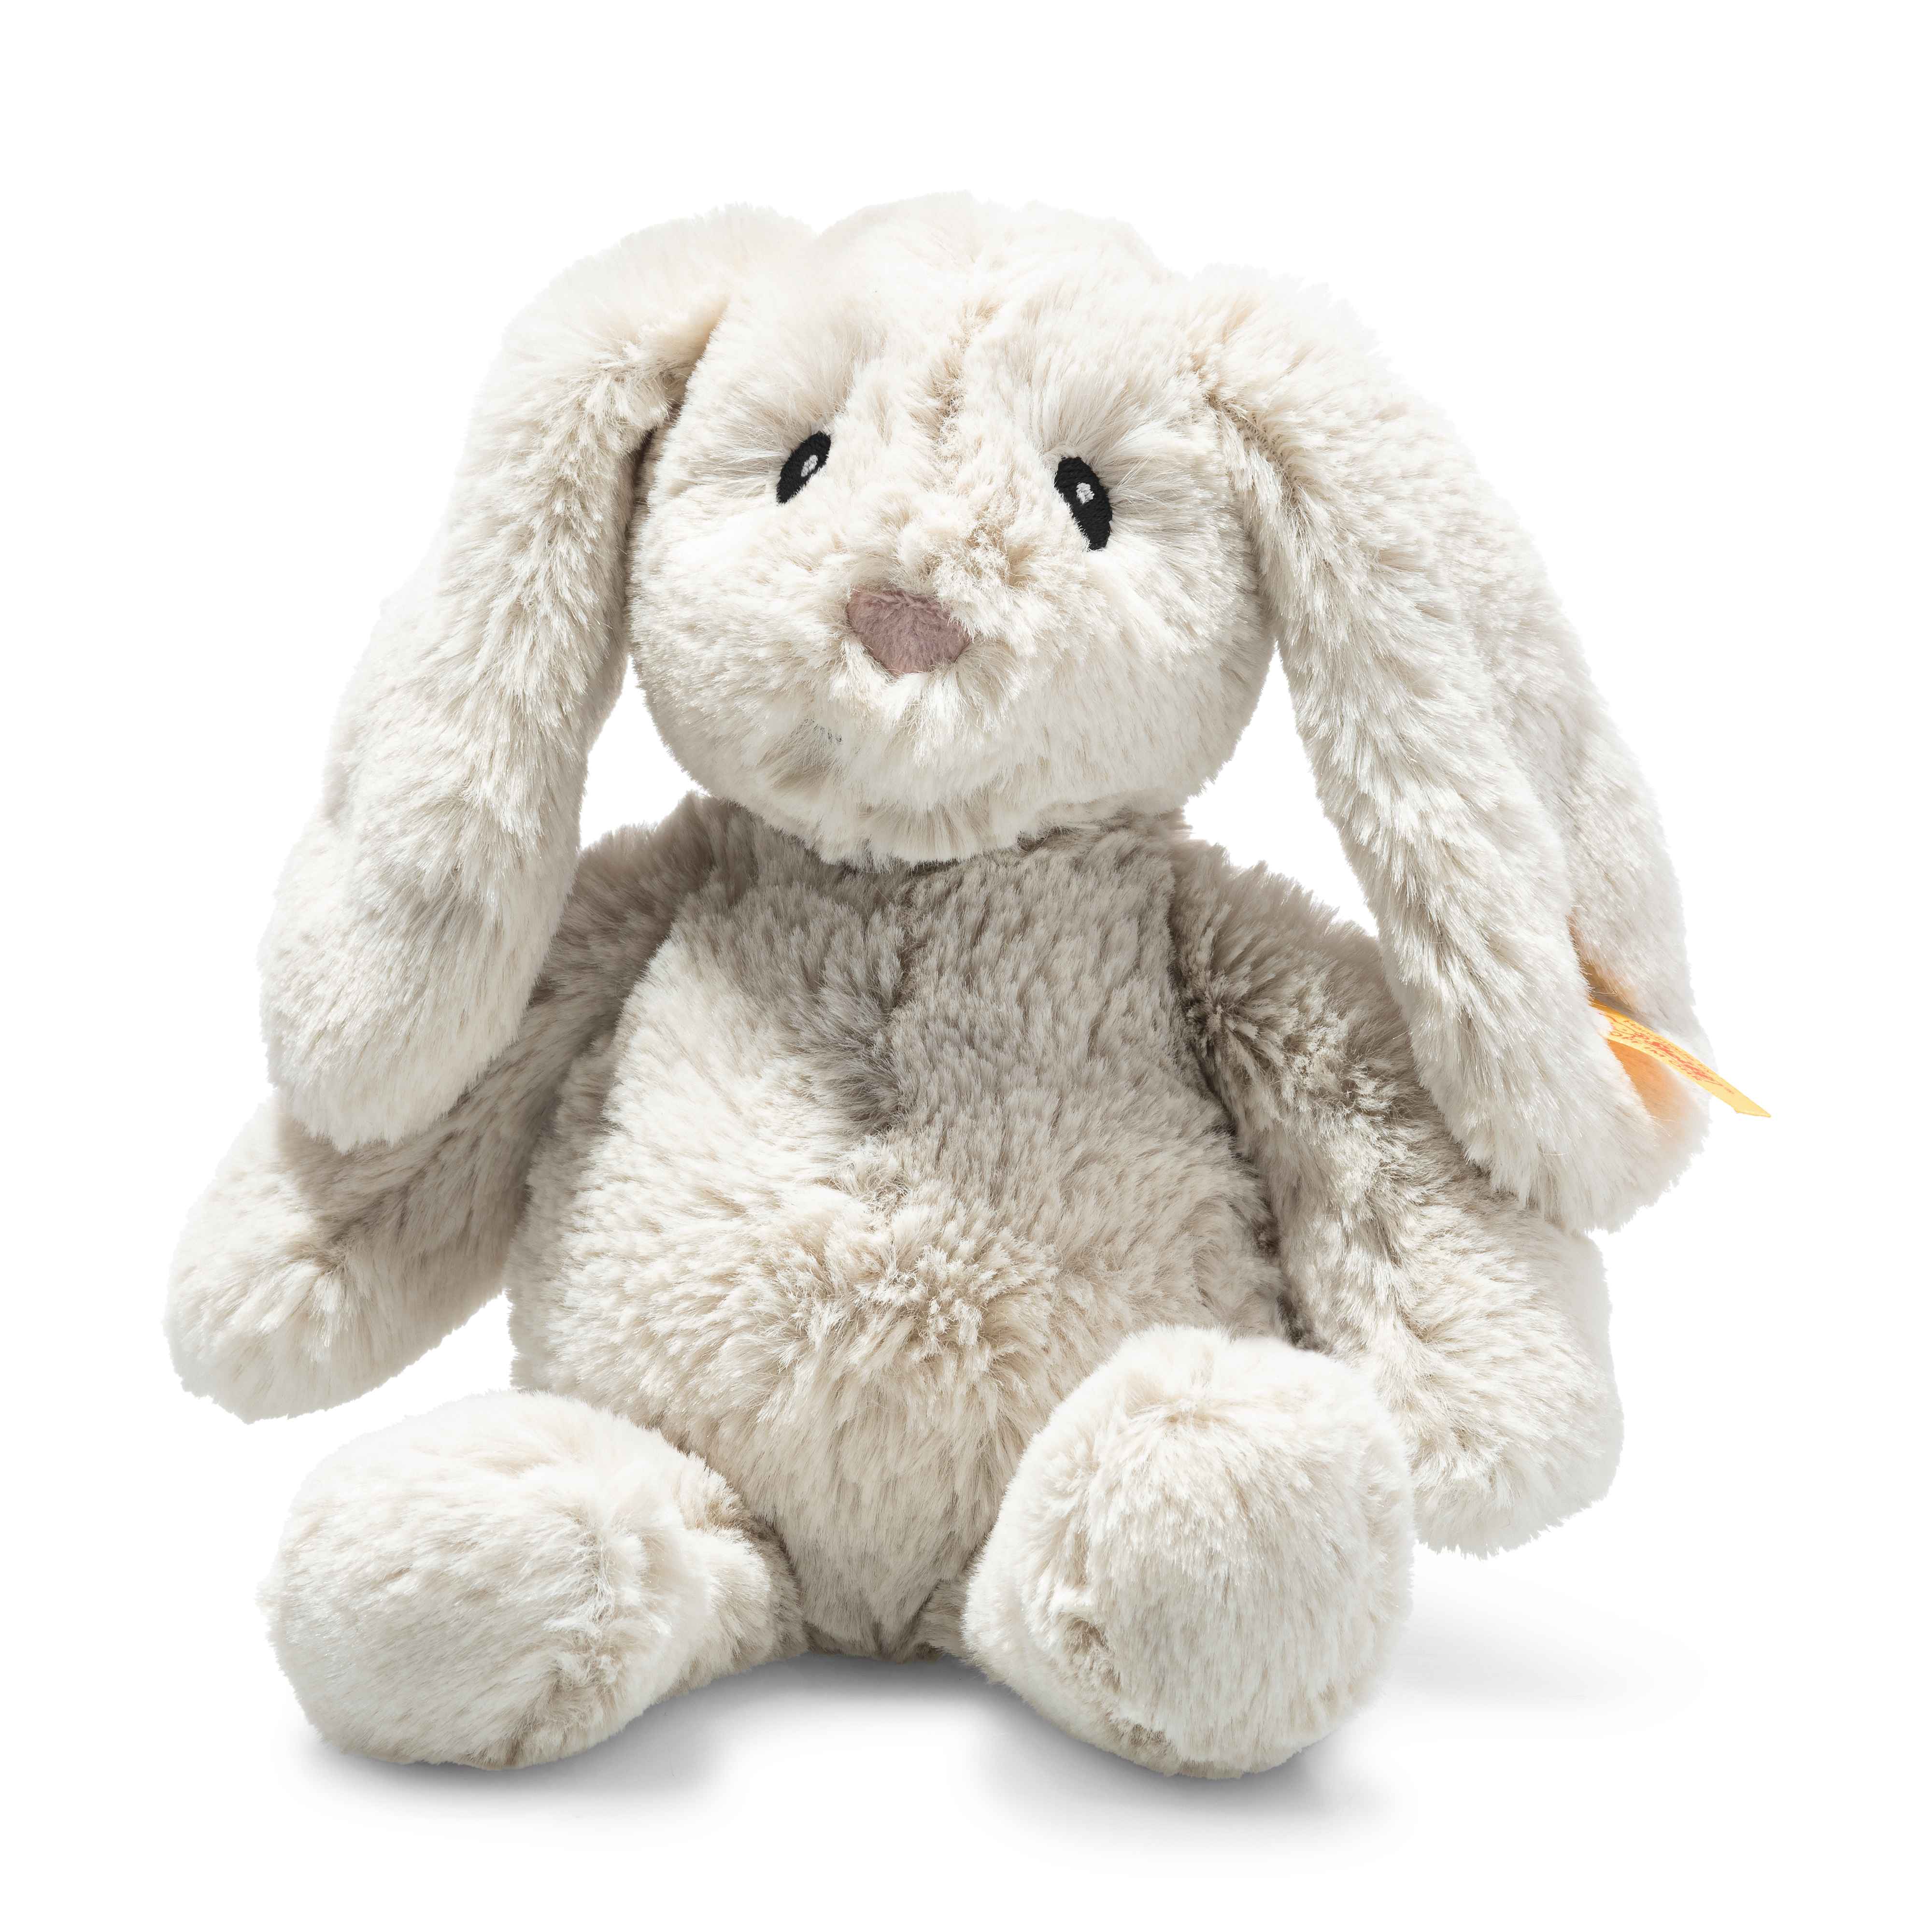 Hoppie Rabbit - Small Standing - Steiff